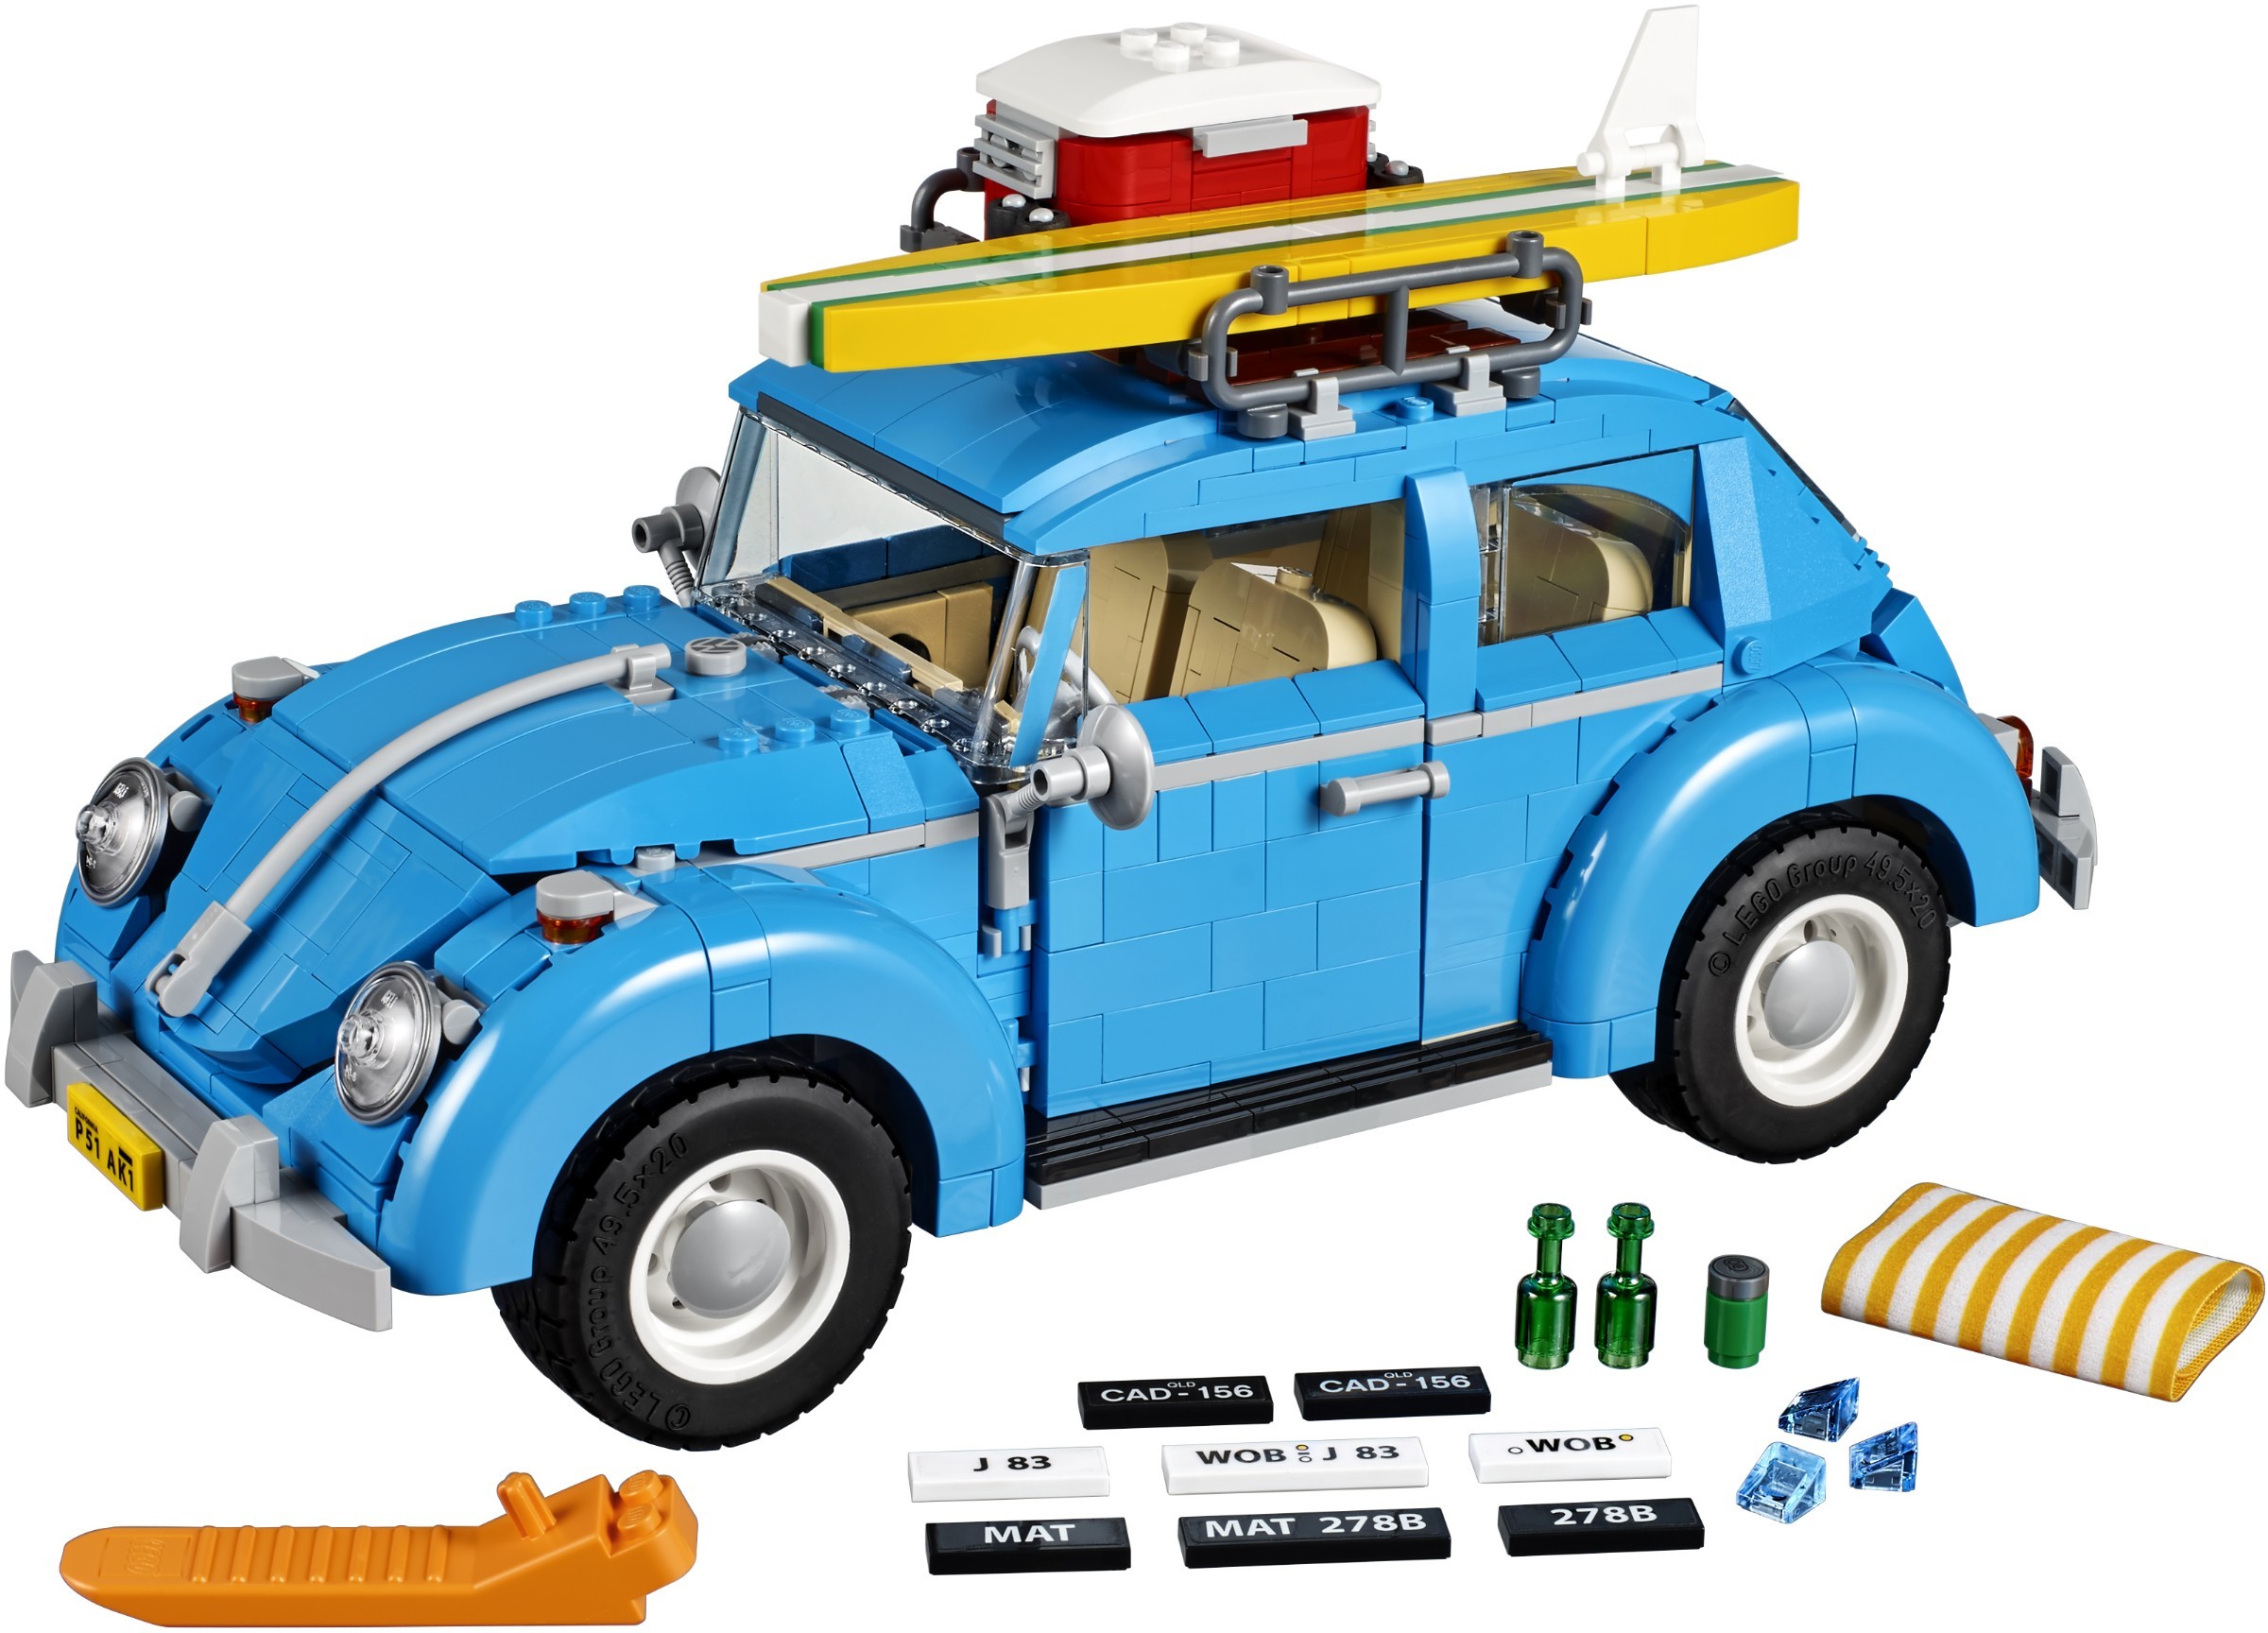 strop skarp lejlighed LEGO Creator Expert Vehicles | Brickset